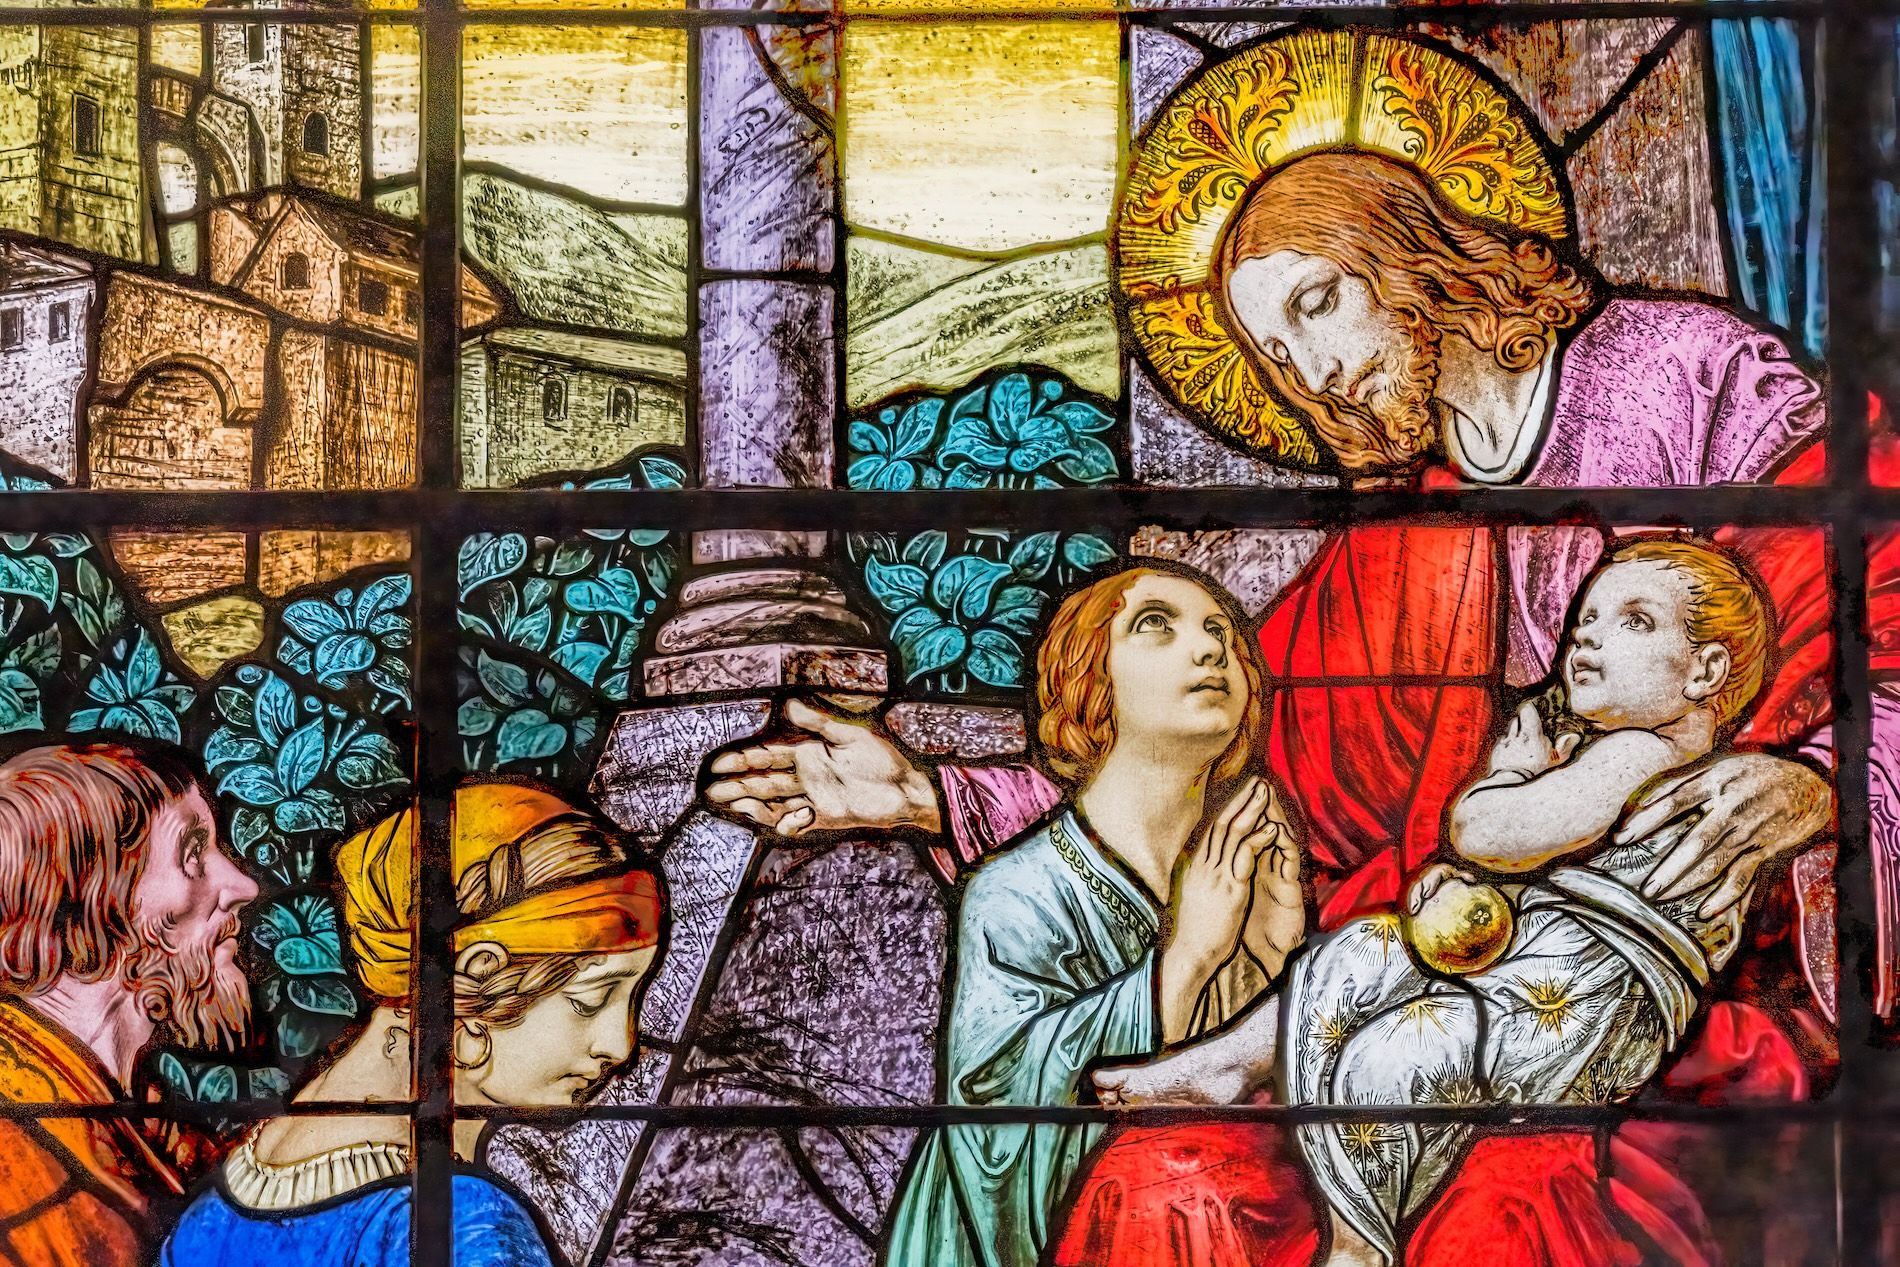 Jesus stained glass window